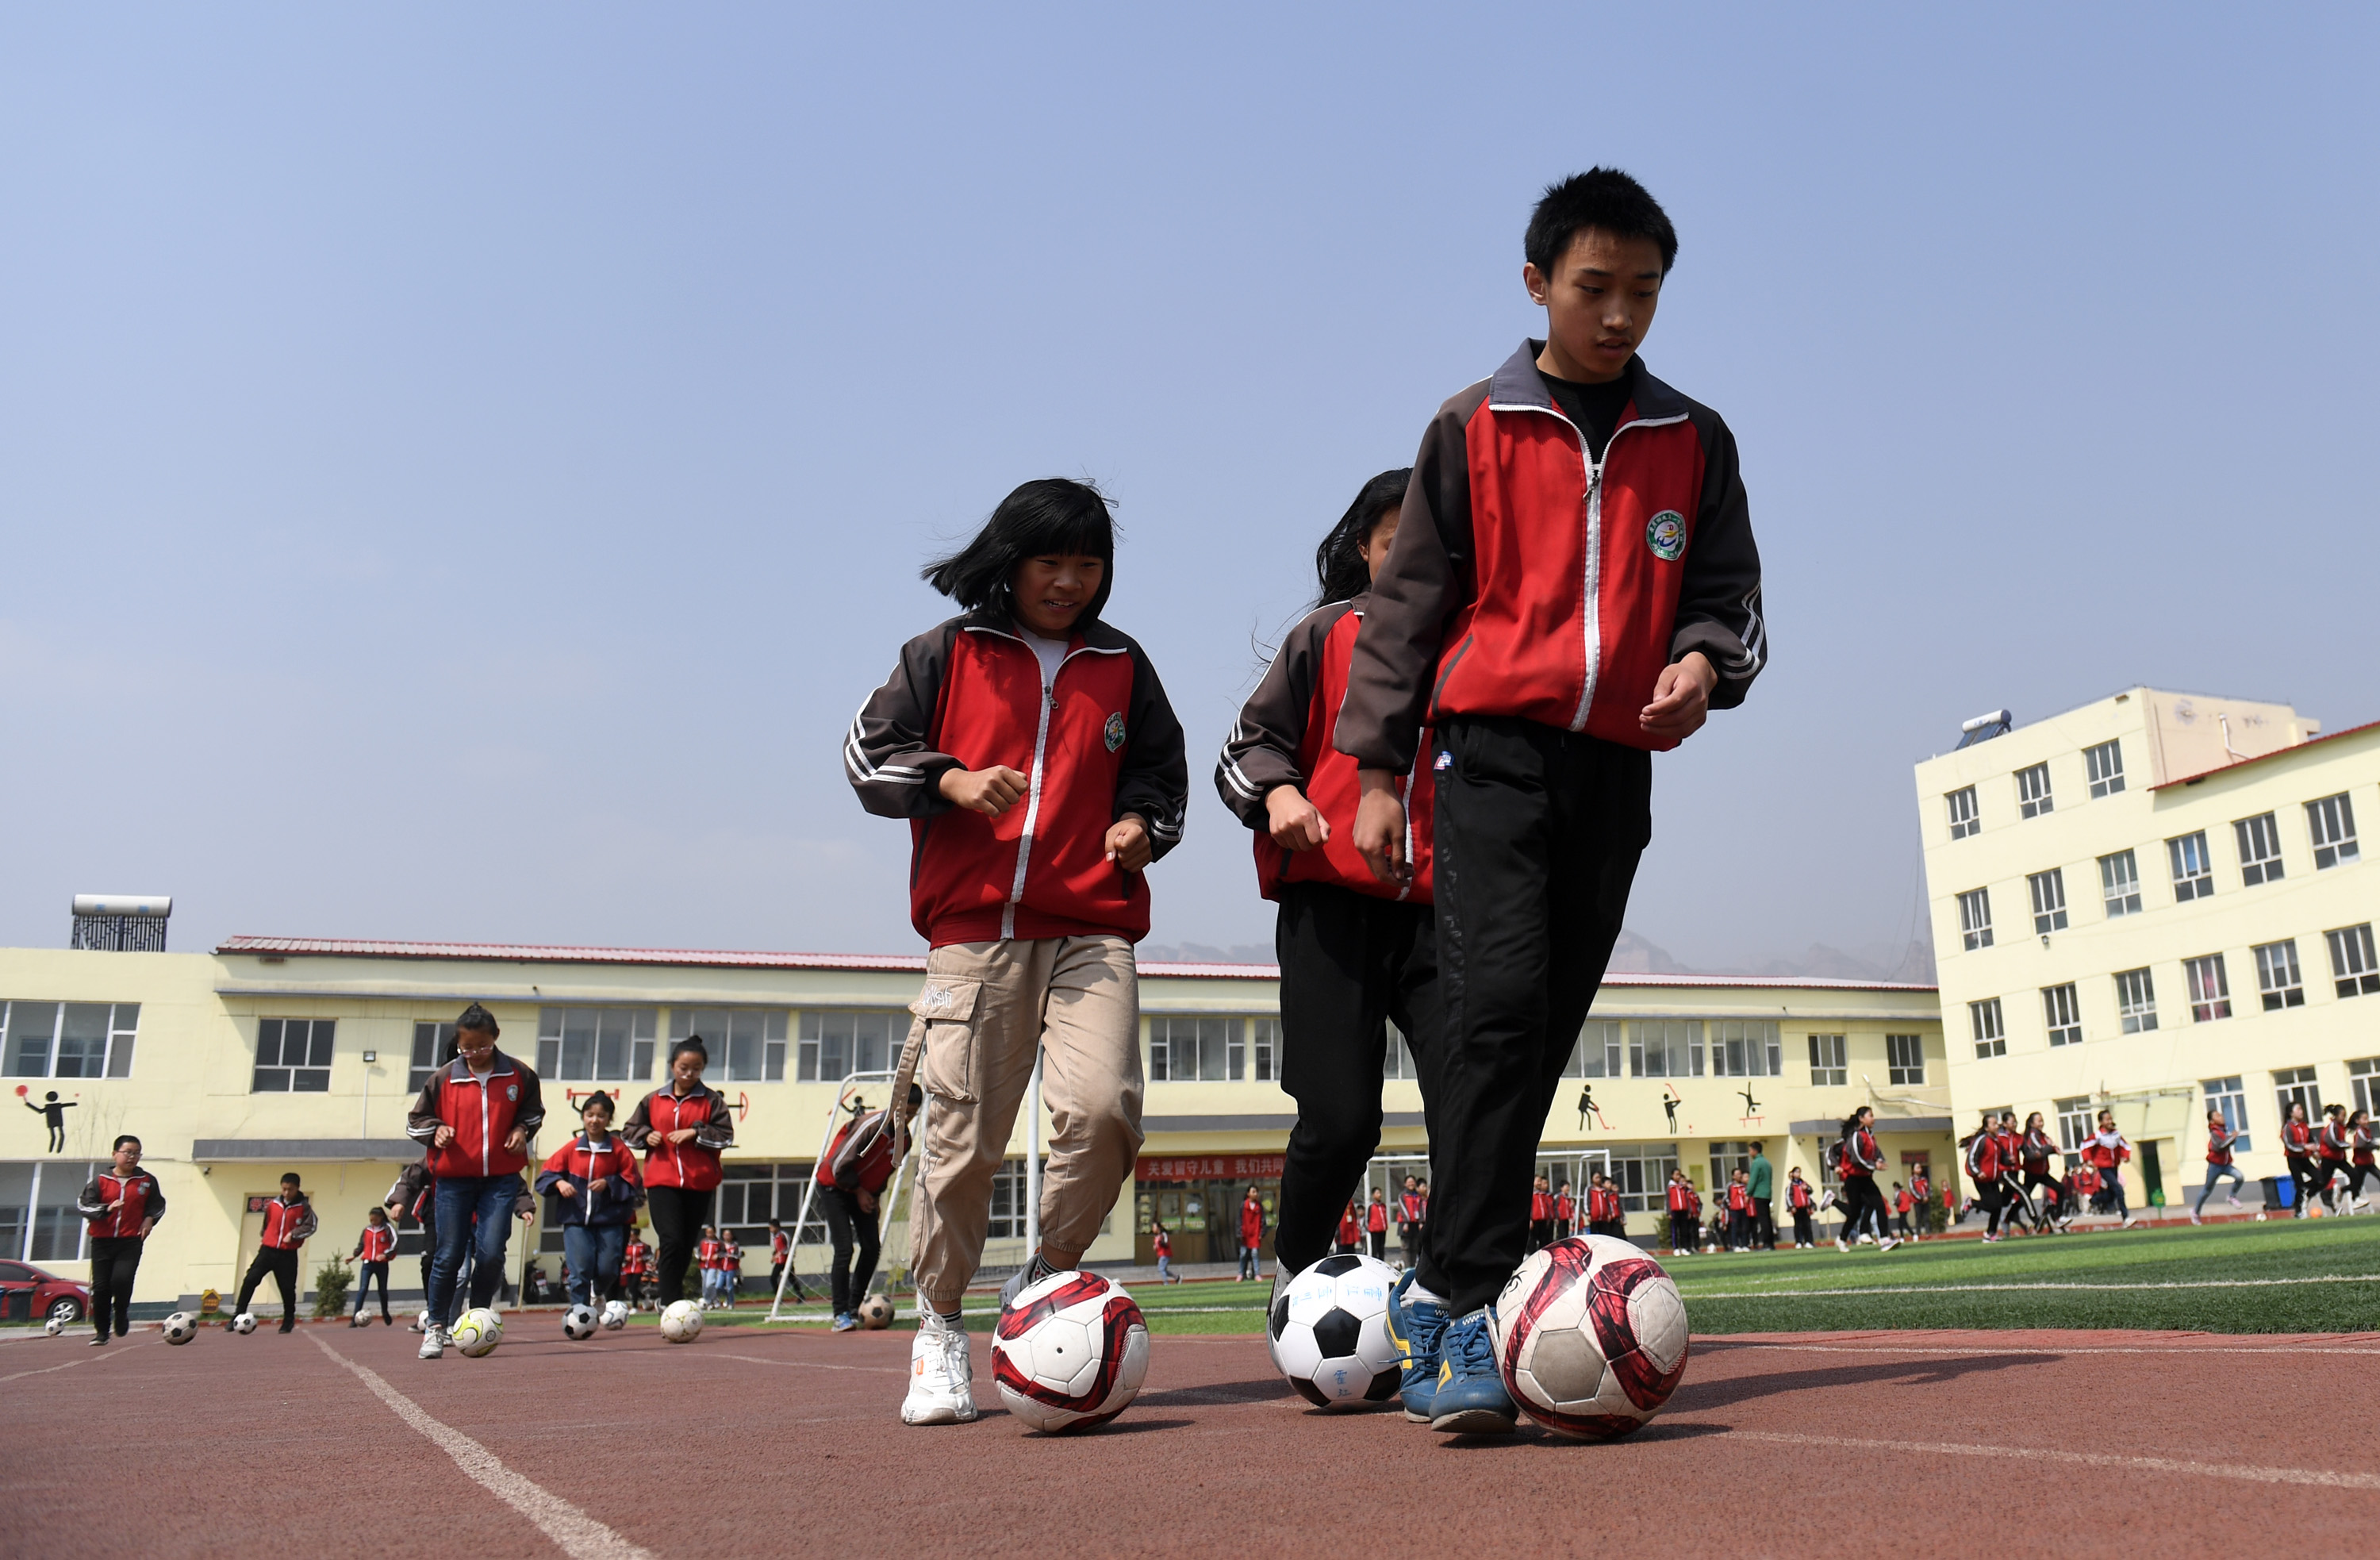 这是学生们在练习带球(4月18日摄)新华社记者李俊东摄